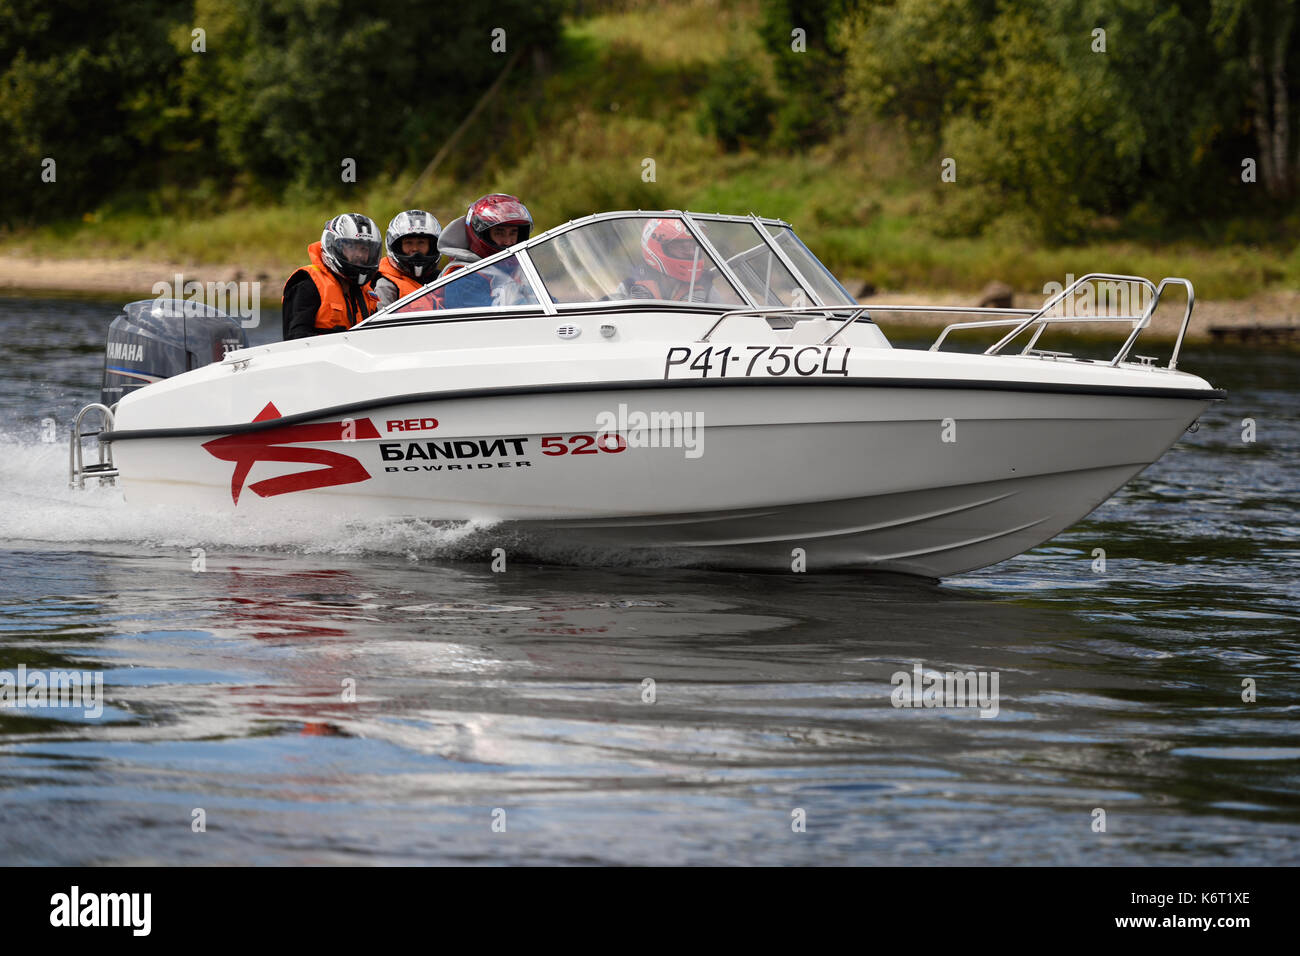 St. Petersburg, Russland - 15. August 2015: Unbekannter Fahrer in den Fluss marathon Oreshek Festung Rennen konkurrieren. Dieses Motorboot compet Stockfoto